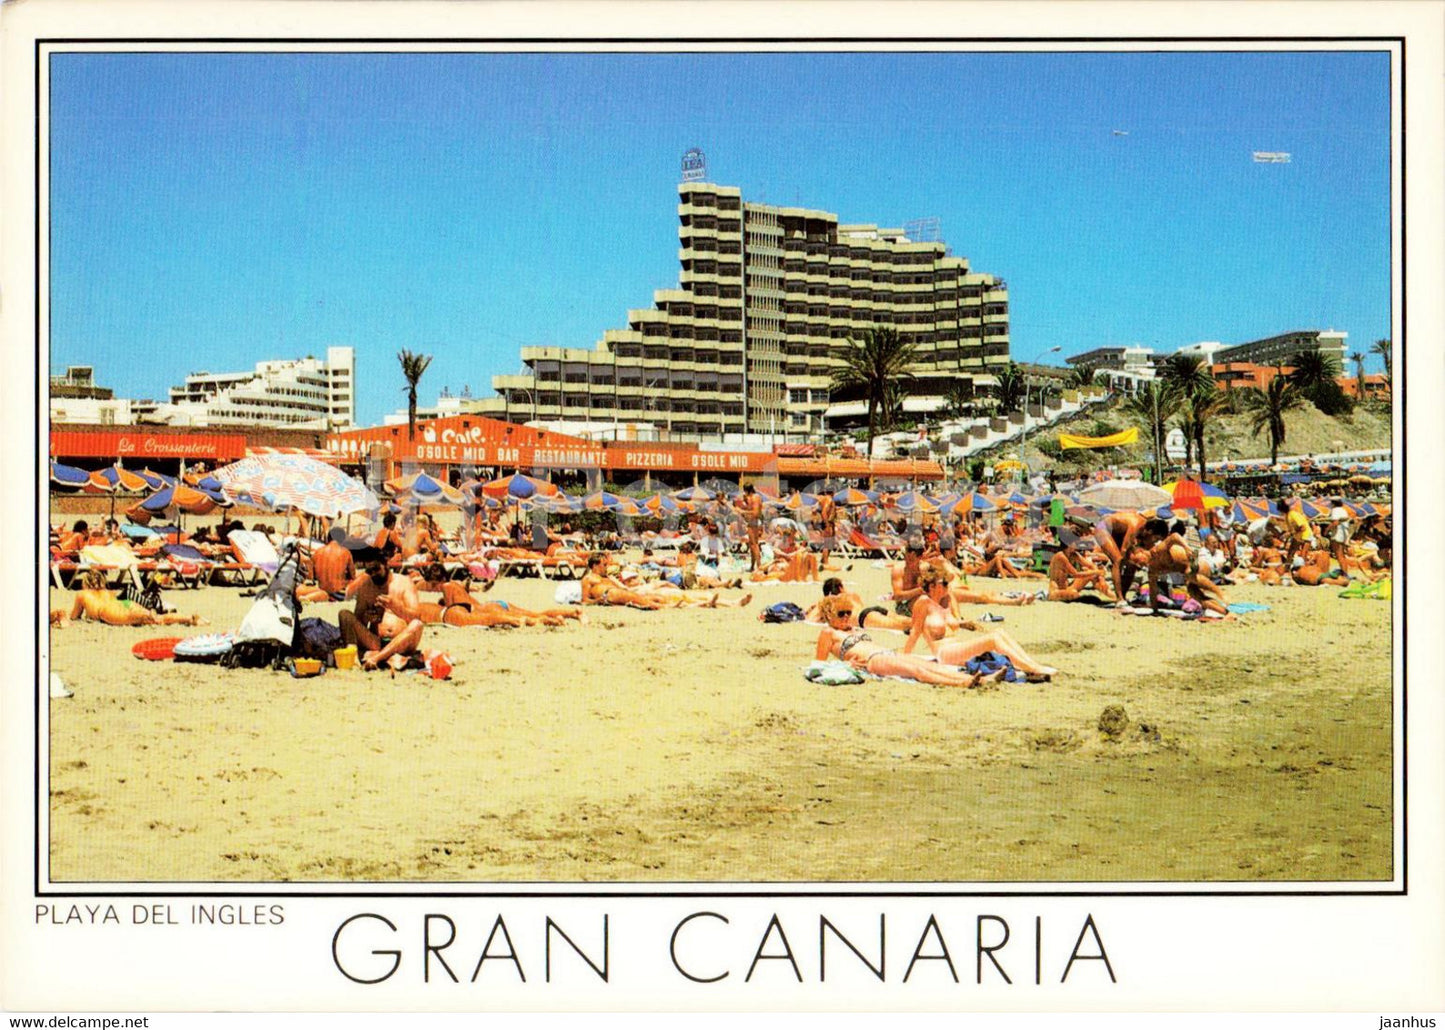 Gran Canaria - Playa del Ingles - 589 - hotel - beach - Spain - unused - JH Postcards